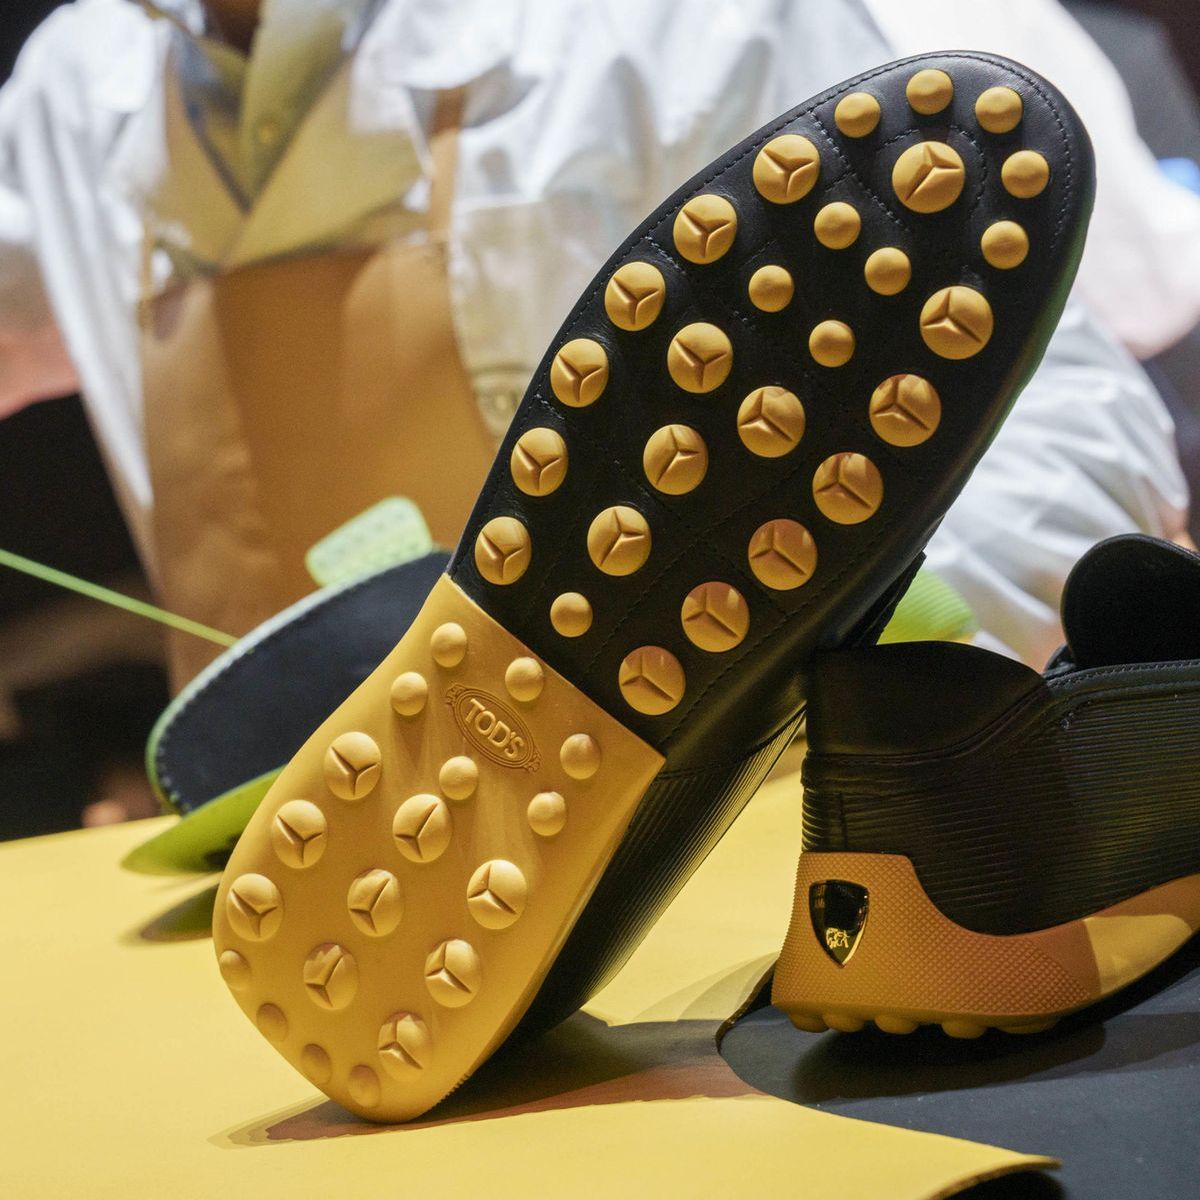 Foto: Tod's und Lamborghini bringen gemeinsame Schuhkollektion.